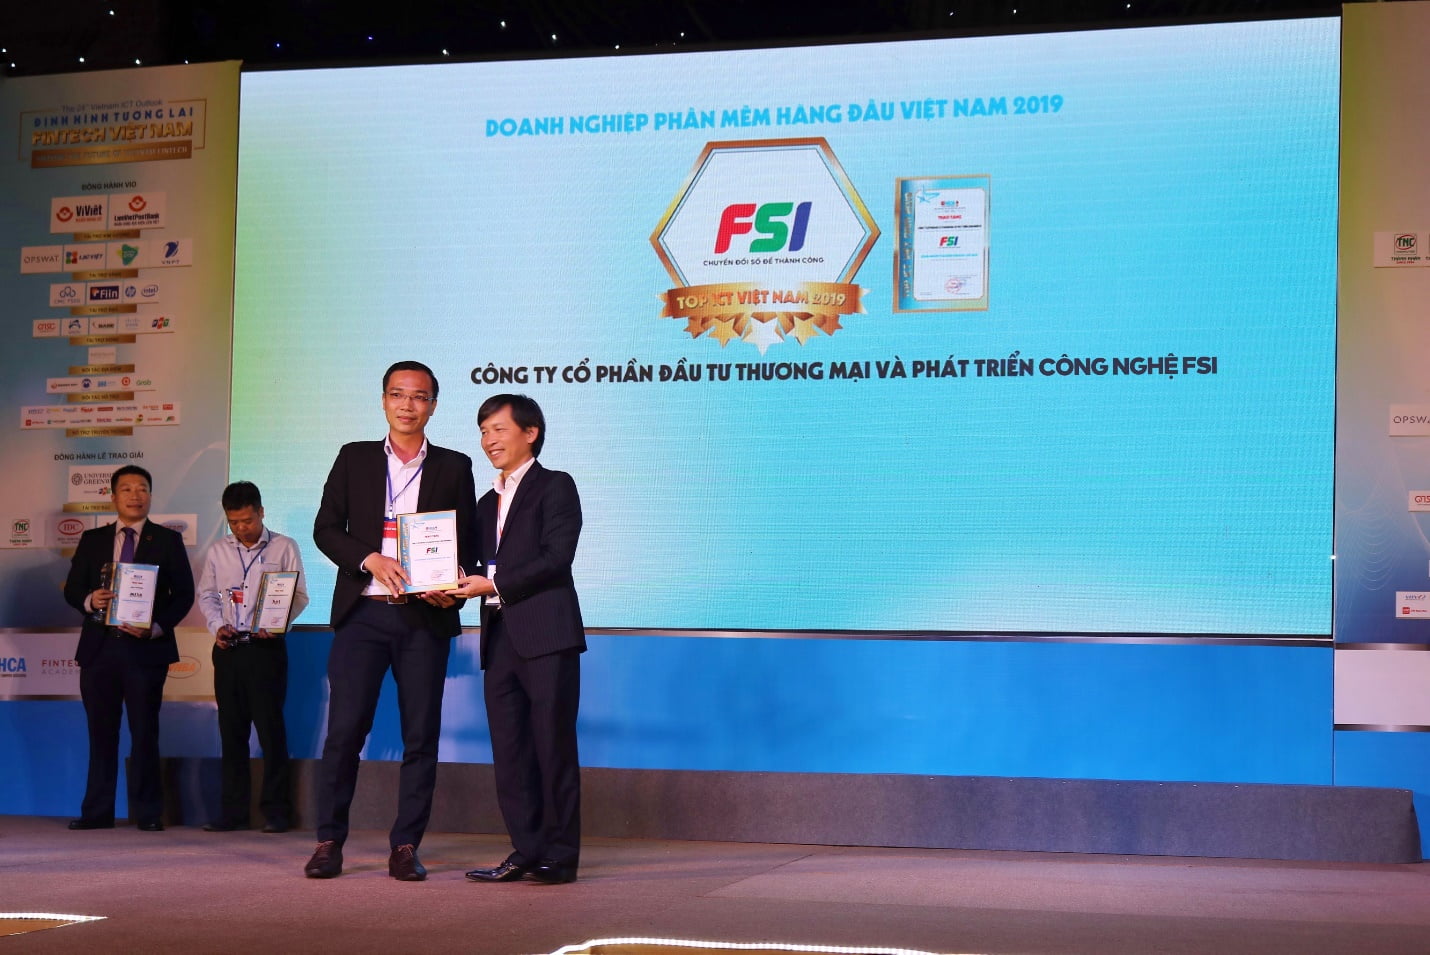 FSI vinh dự nhận giải thưởng Top Doanh nghiệp Phần mềm hàng đầu Việt Nam do Hội tin học HCM (HCA) trao tặng